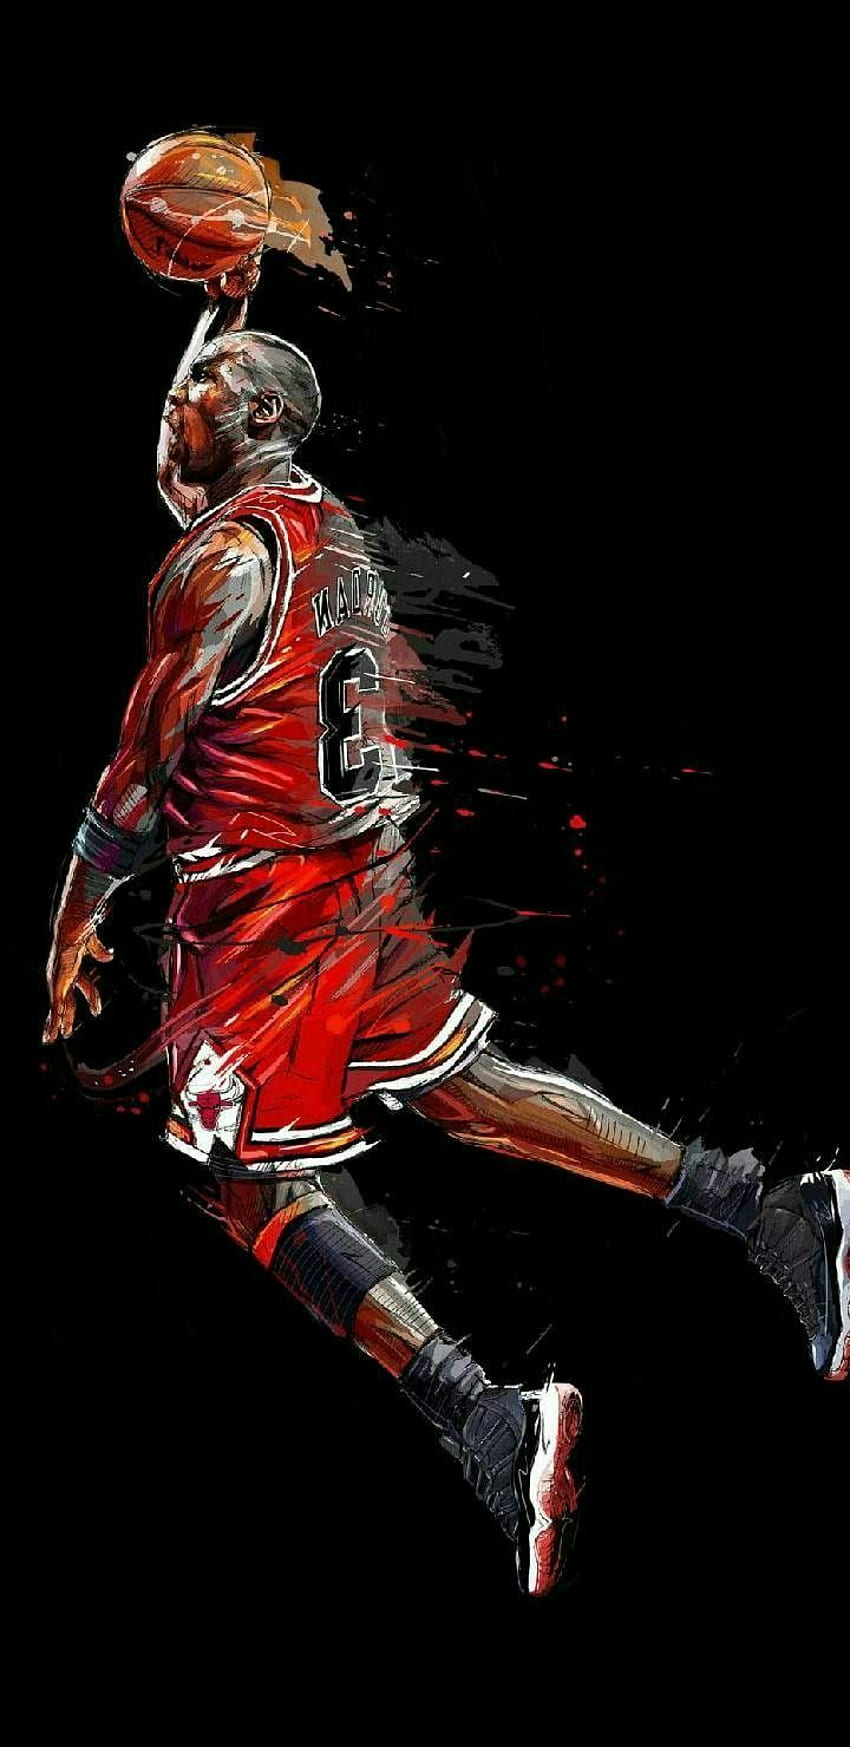 Download The legendary Michael Jordan available as an iPhone wallpaper  Wallpaper  Wallpaperscom